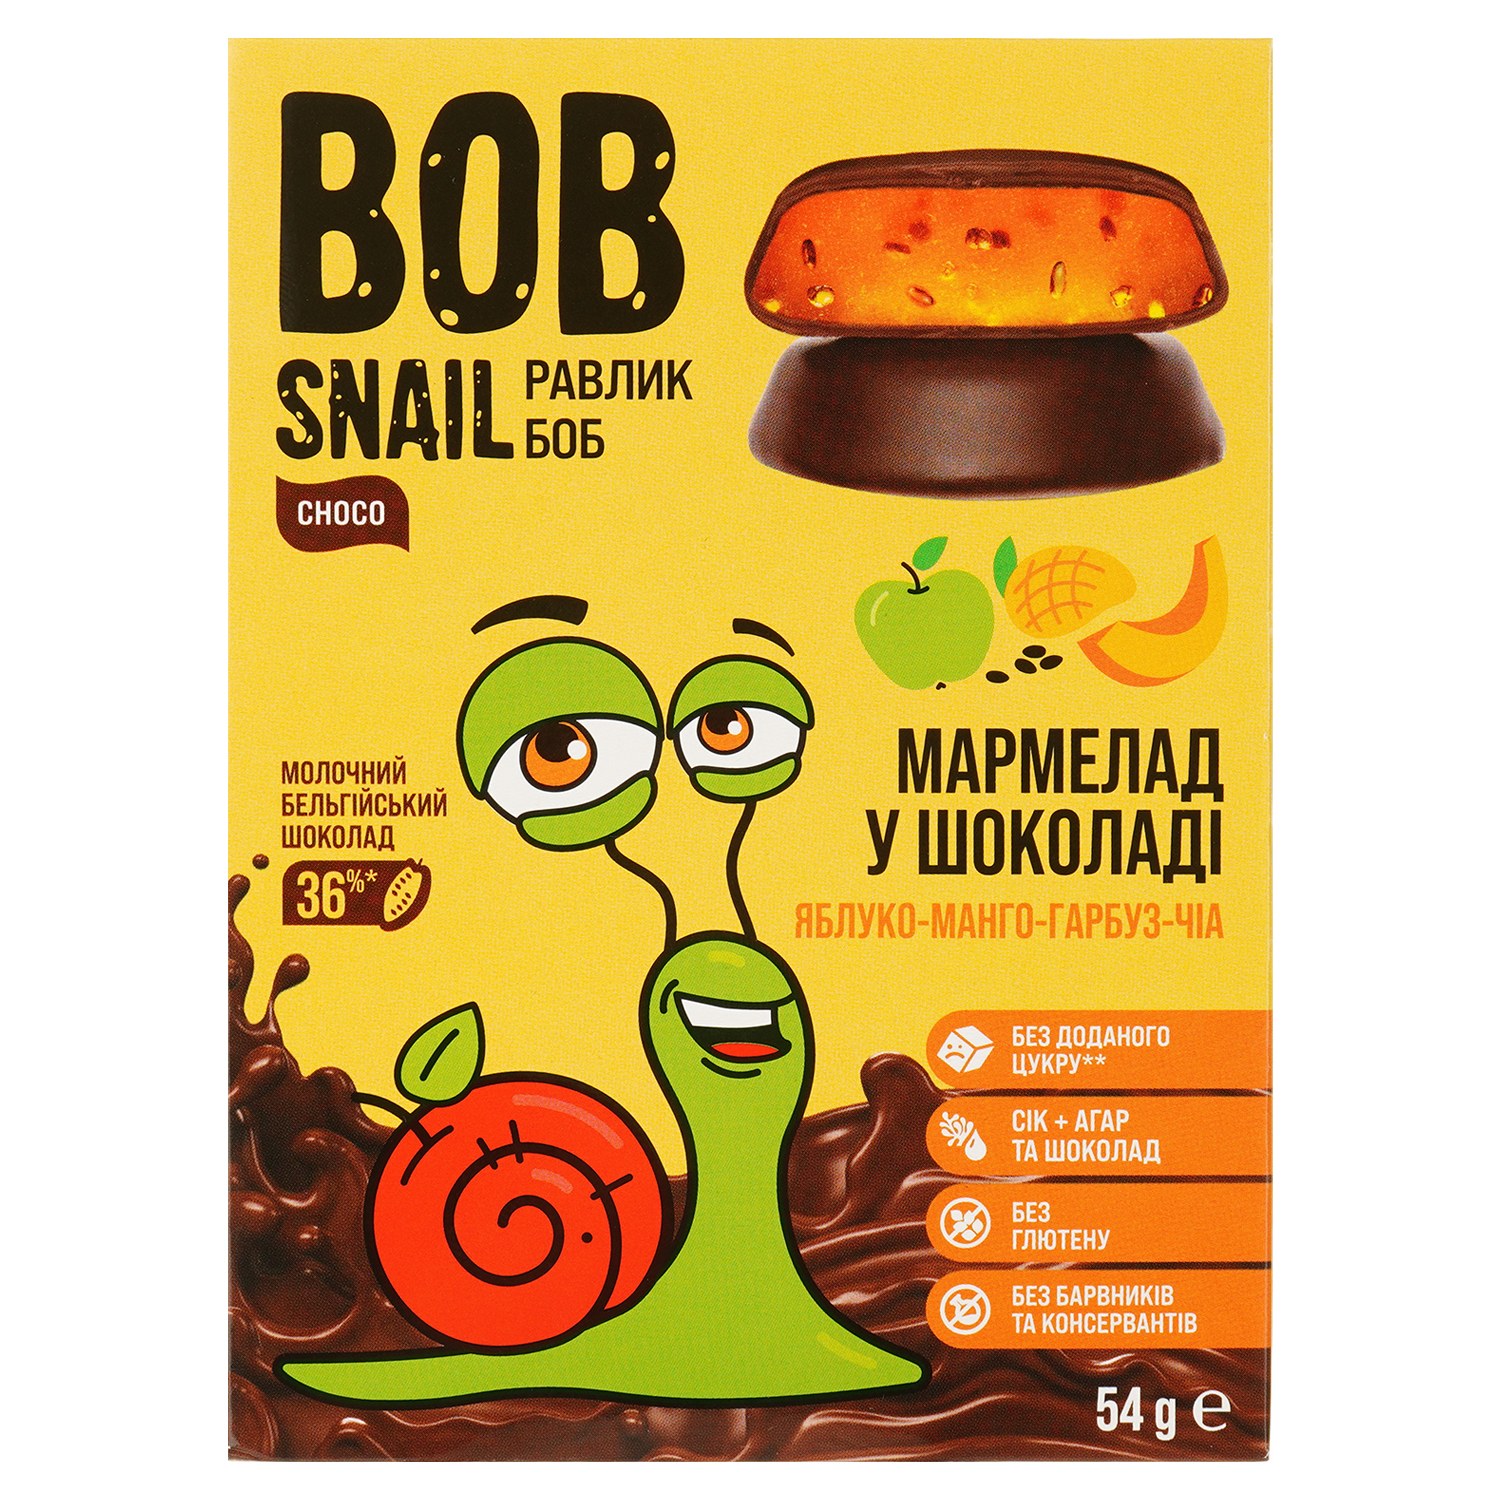 Фруктово-овощной мармелад Bob Snail Яблоко-Манго-Тыква-Чиа в бельгийском молочном шоколаде 54 г - фото 1